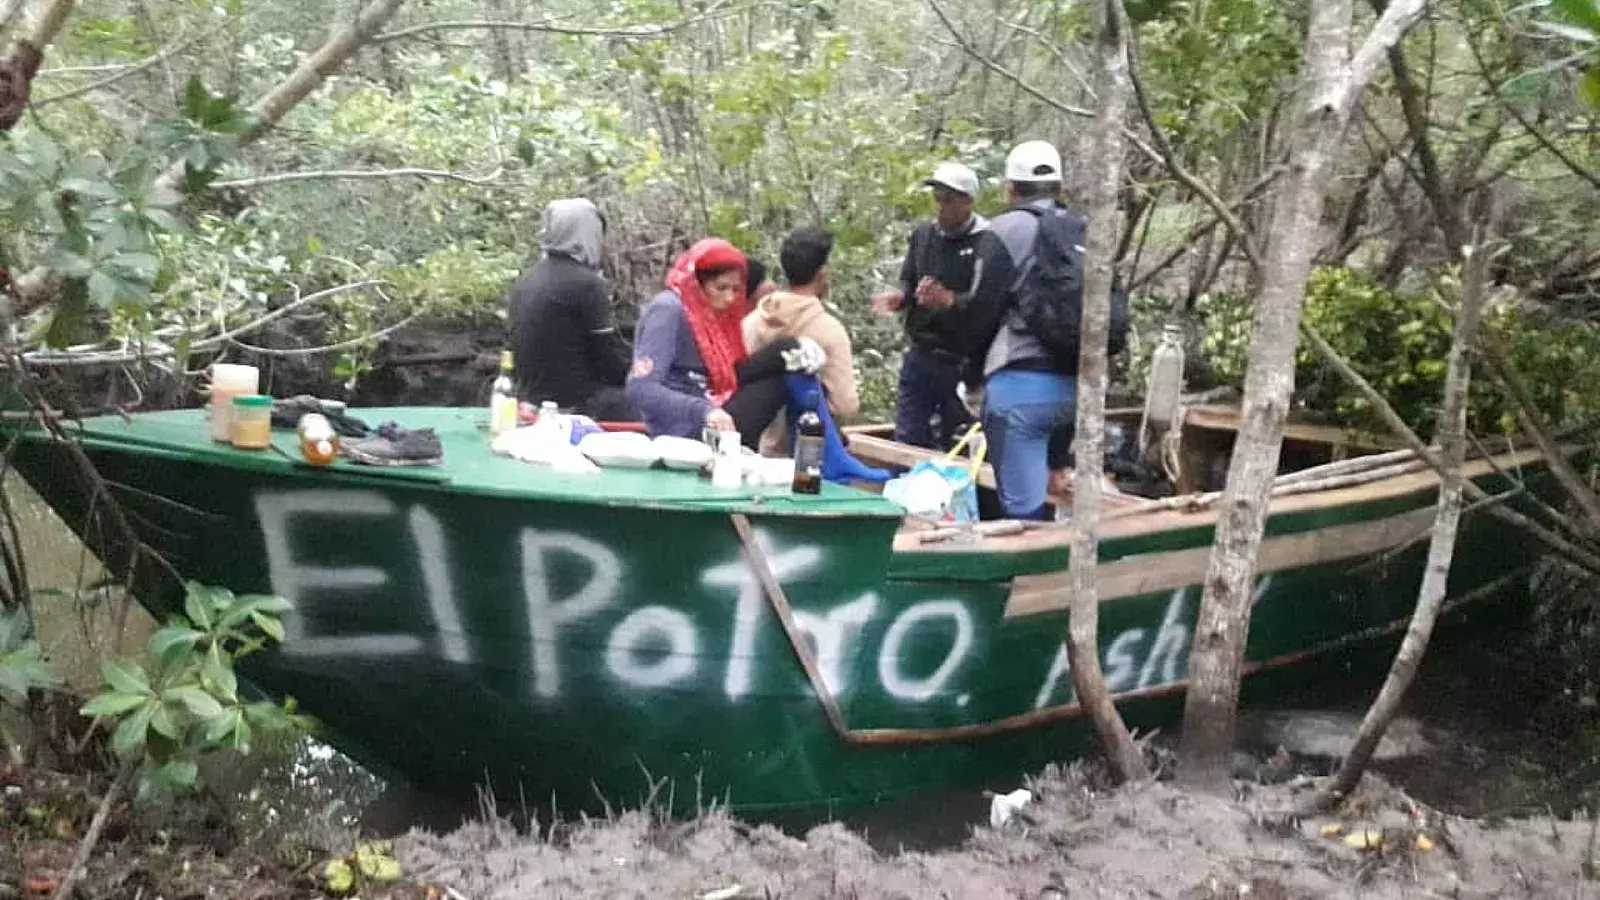 Salieron en un bote verde de madera, con un cartel que dice &quot;El potro&quot;